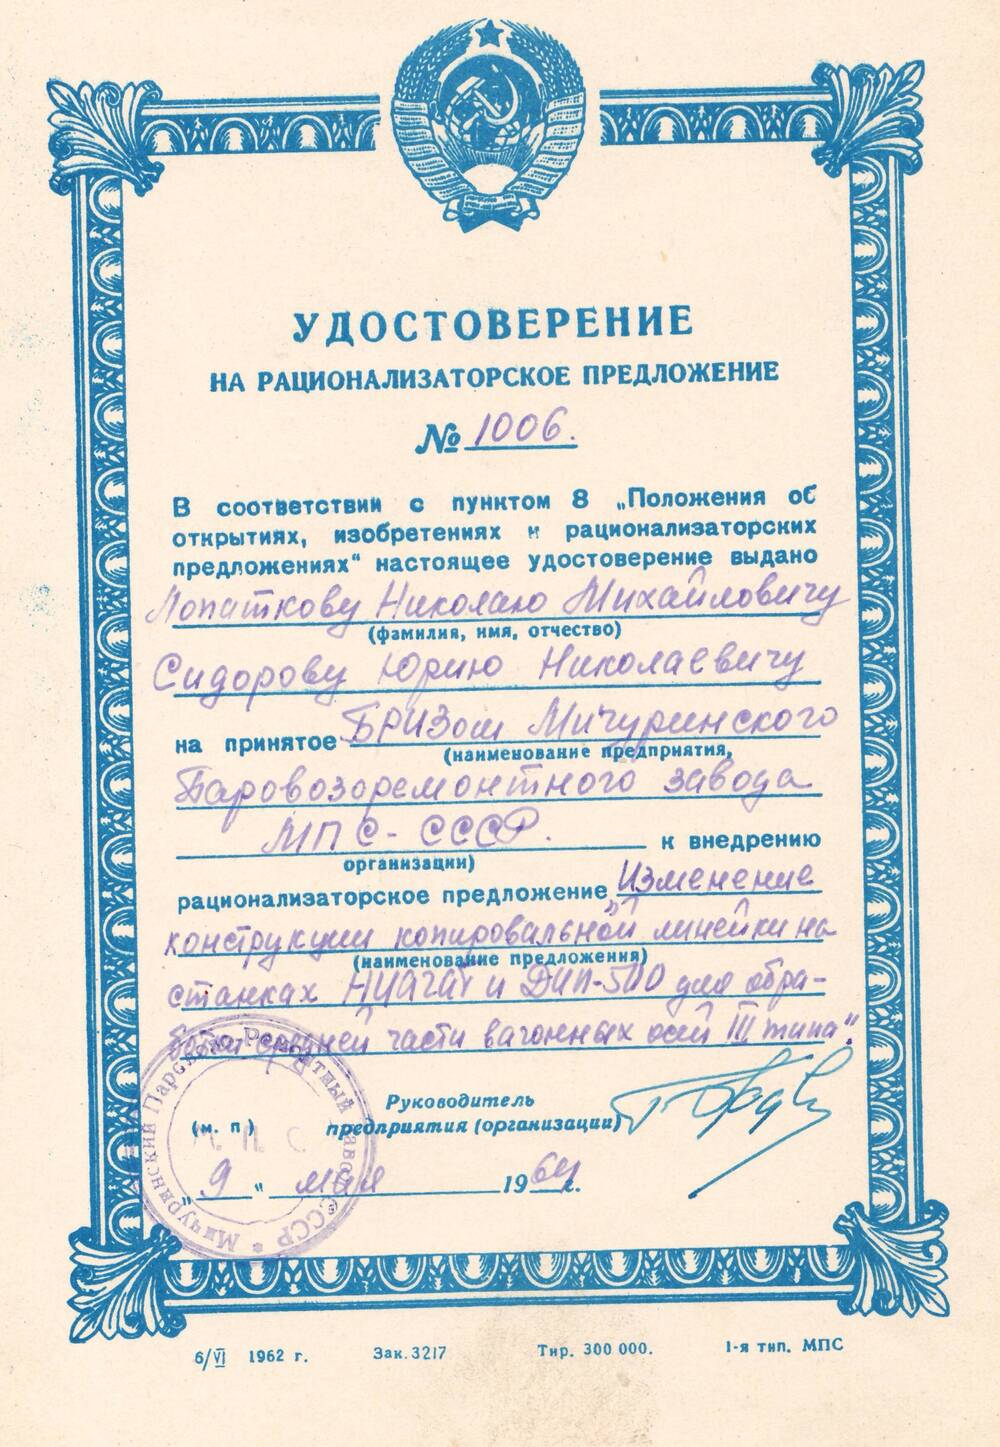 Удостоверение на рационализаторское предложение №1006 Лопаткова Н.М., Сидорова Ю.Н.